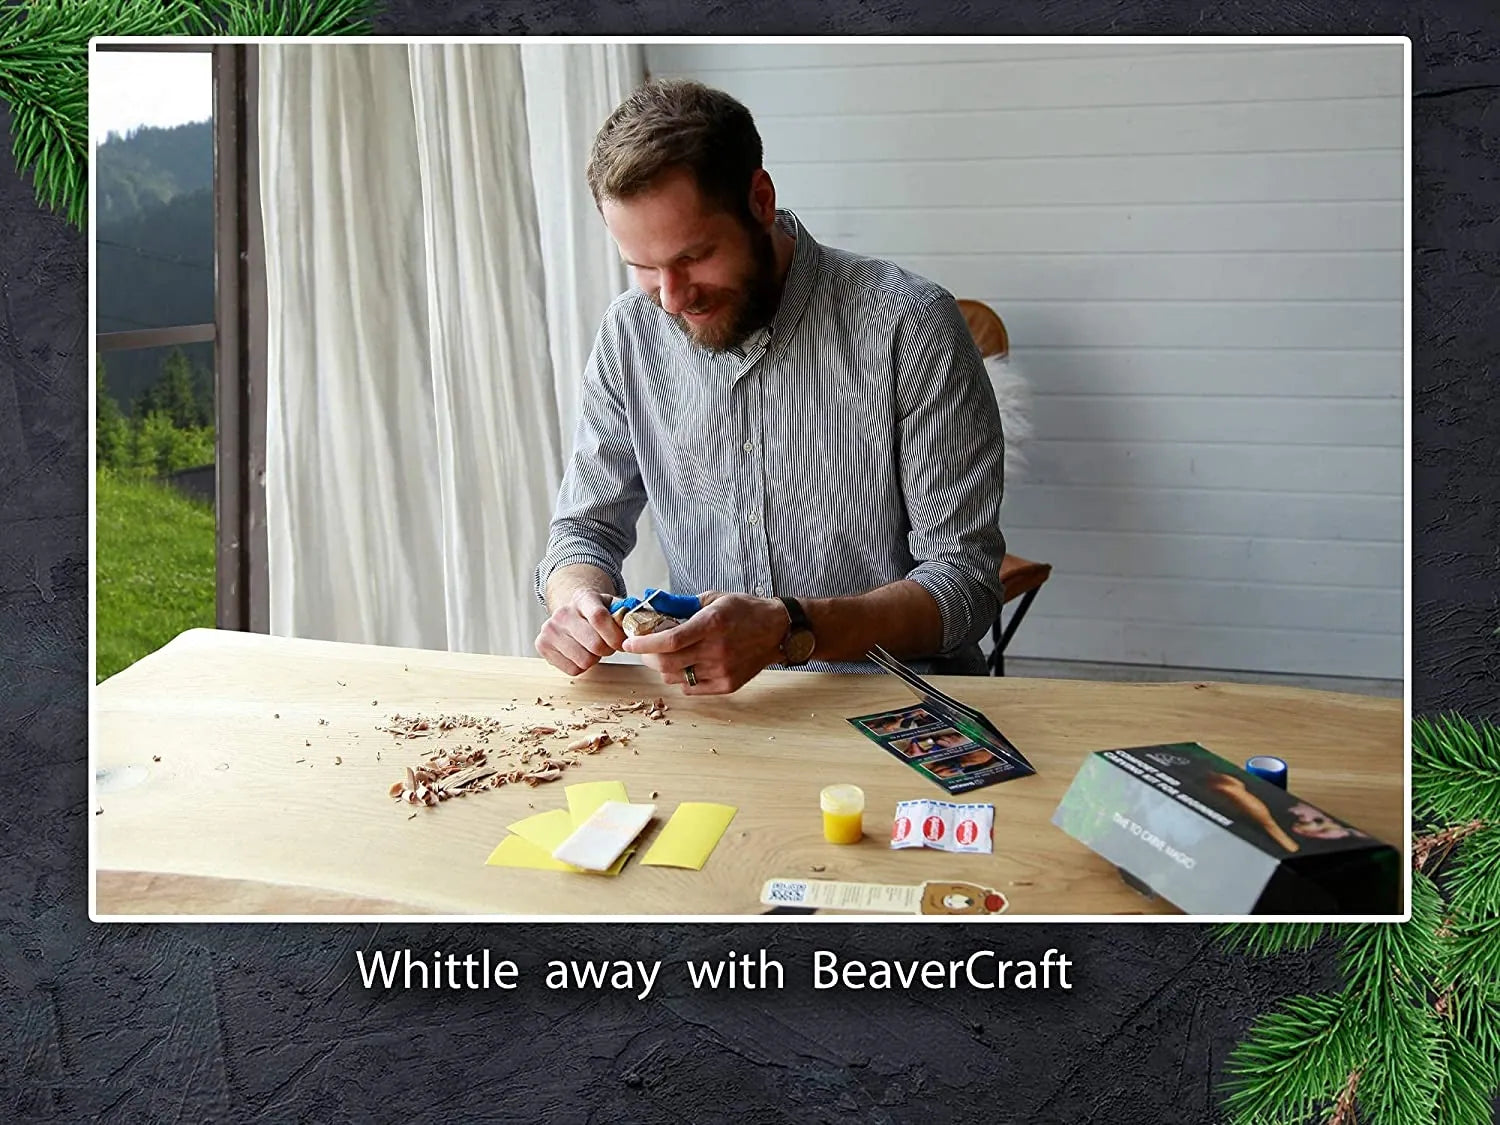 Best whittling starter kit online - BeaverCraft – BeaverCraft Tools